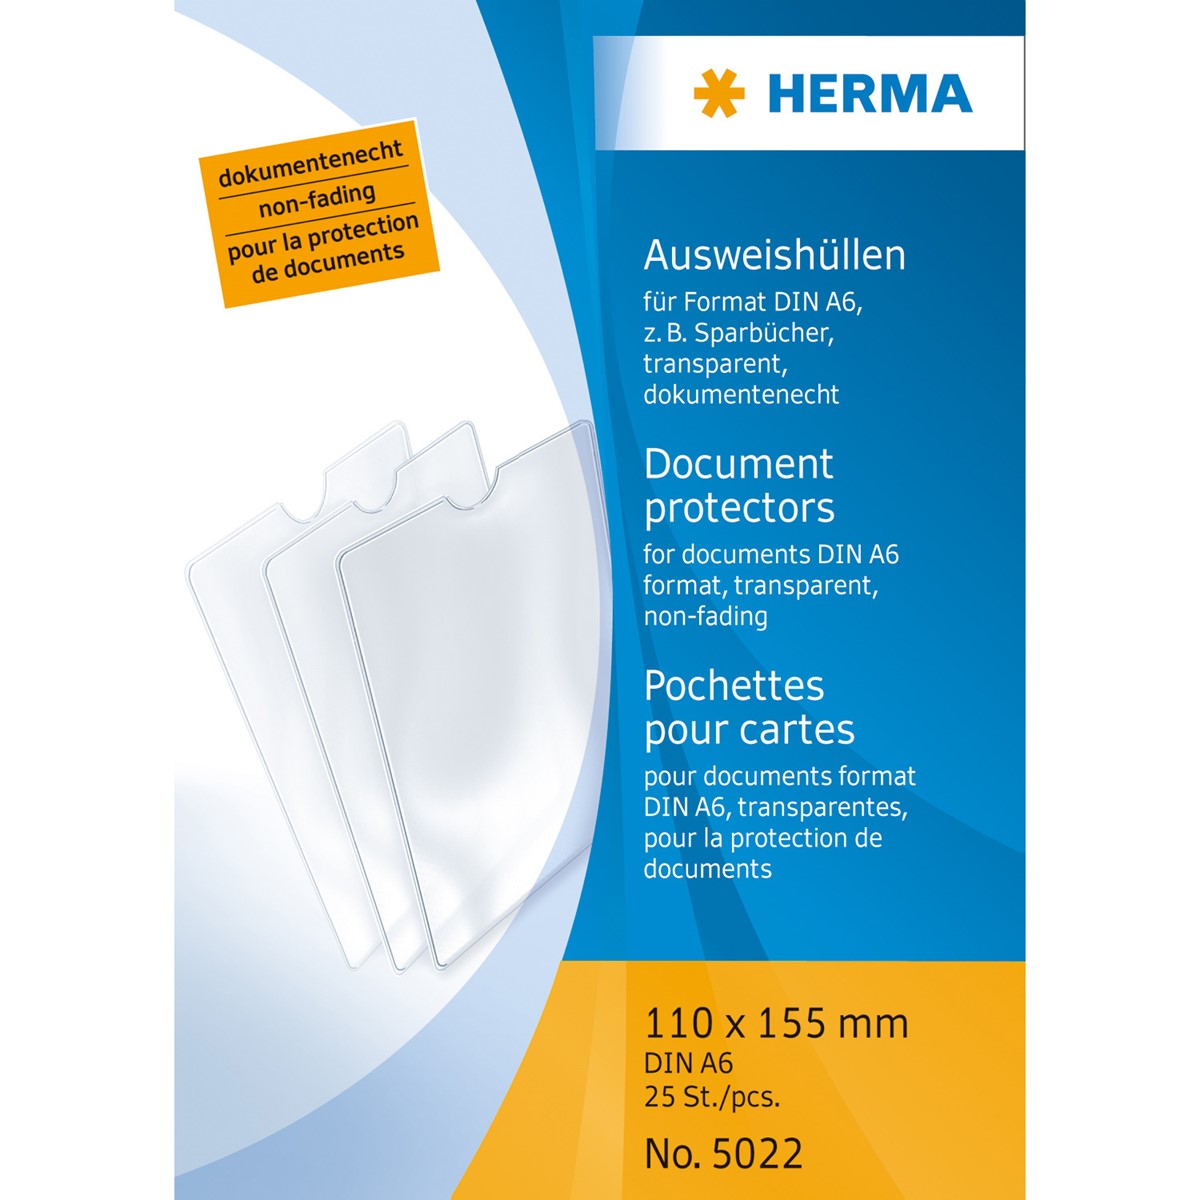 Herma - Ausweishülle DIN A6, 110 x 155 mm, für Impfpaß, Sparbuch, einfach 